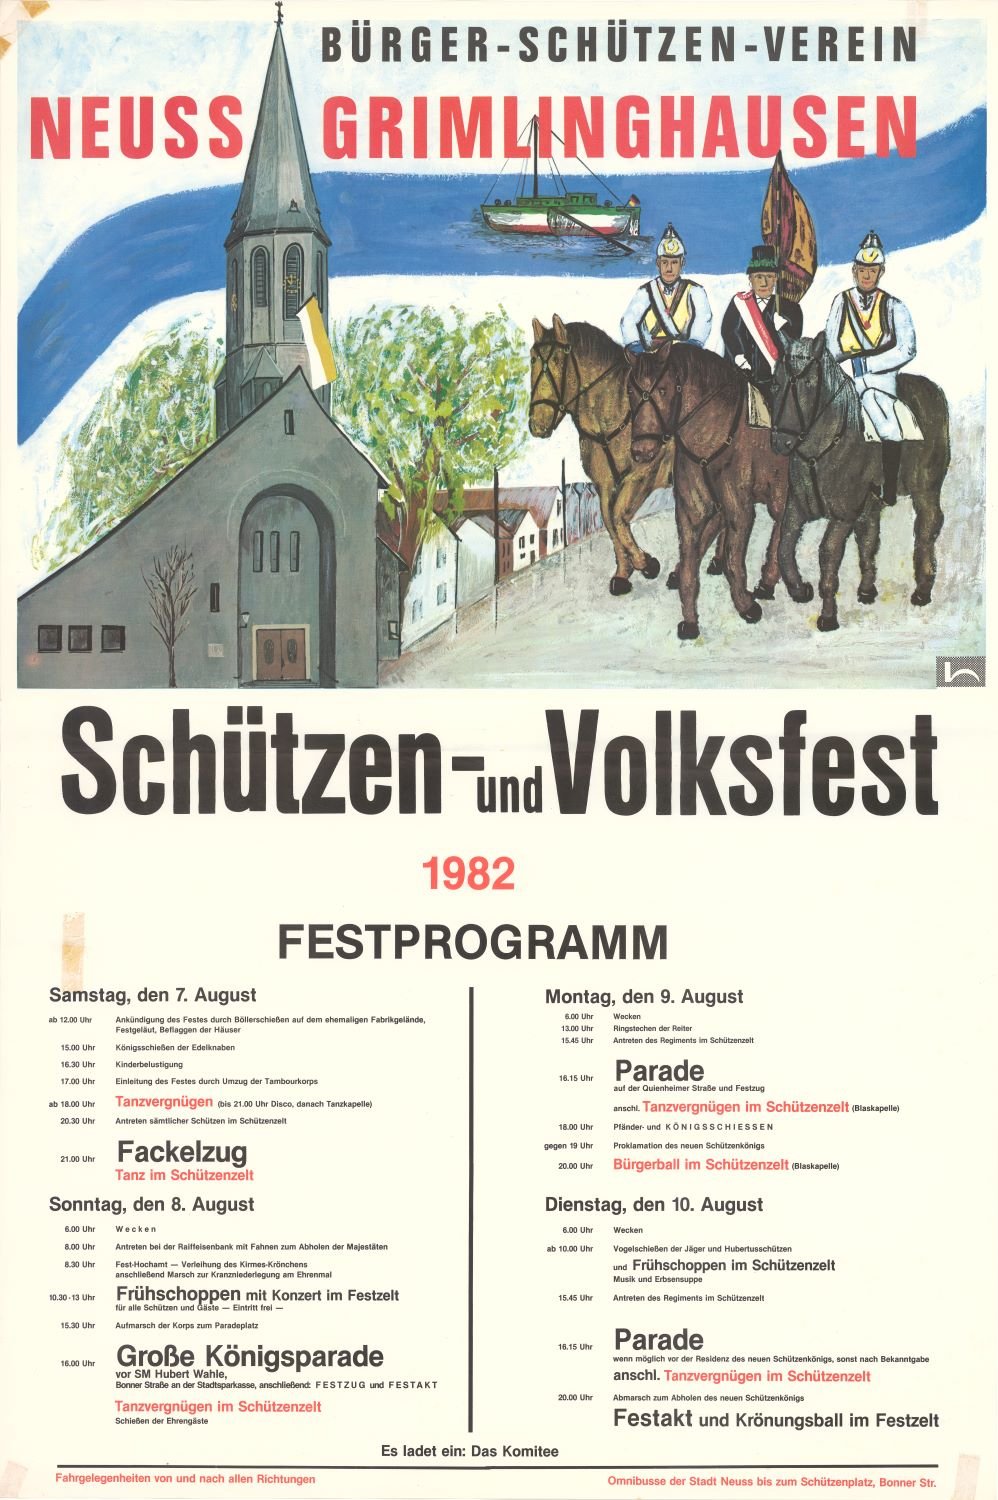 Festplakat Schützenfest Neuss-Grimlinghausen 1982 (Rheinisches Schützenmuseum Neuss CC BY-NC-SA)